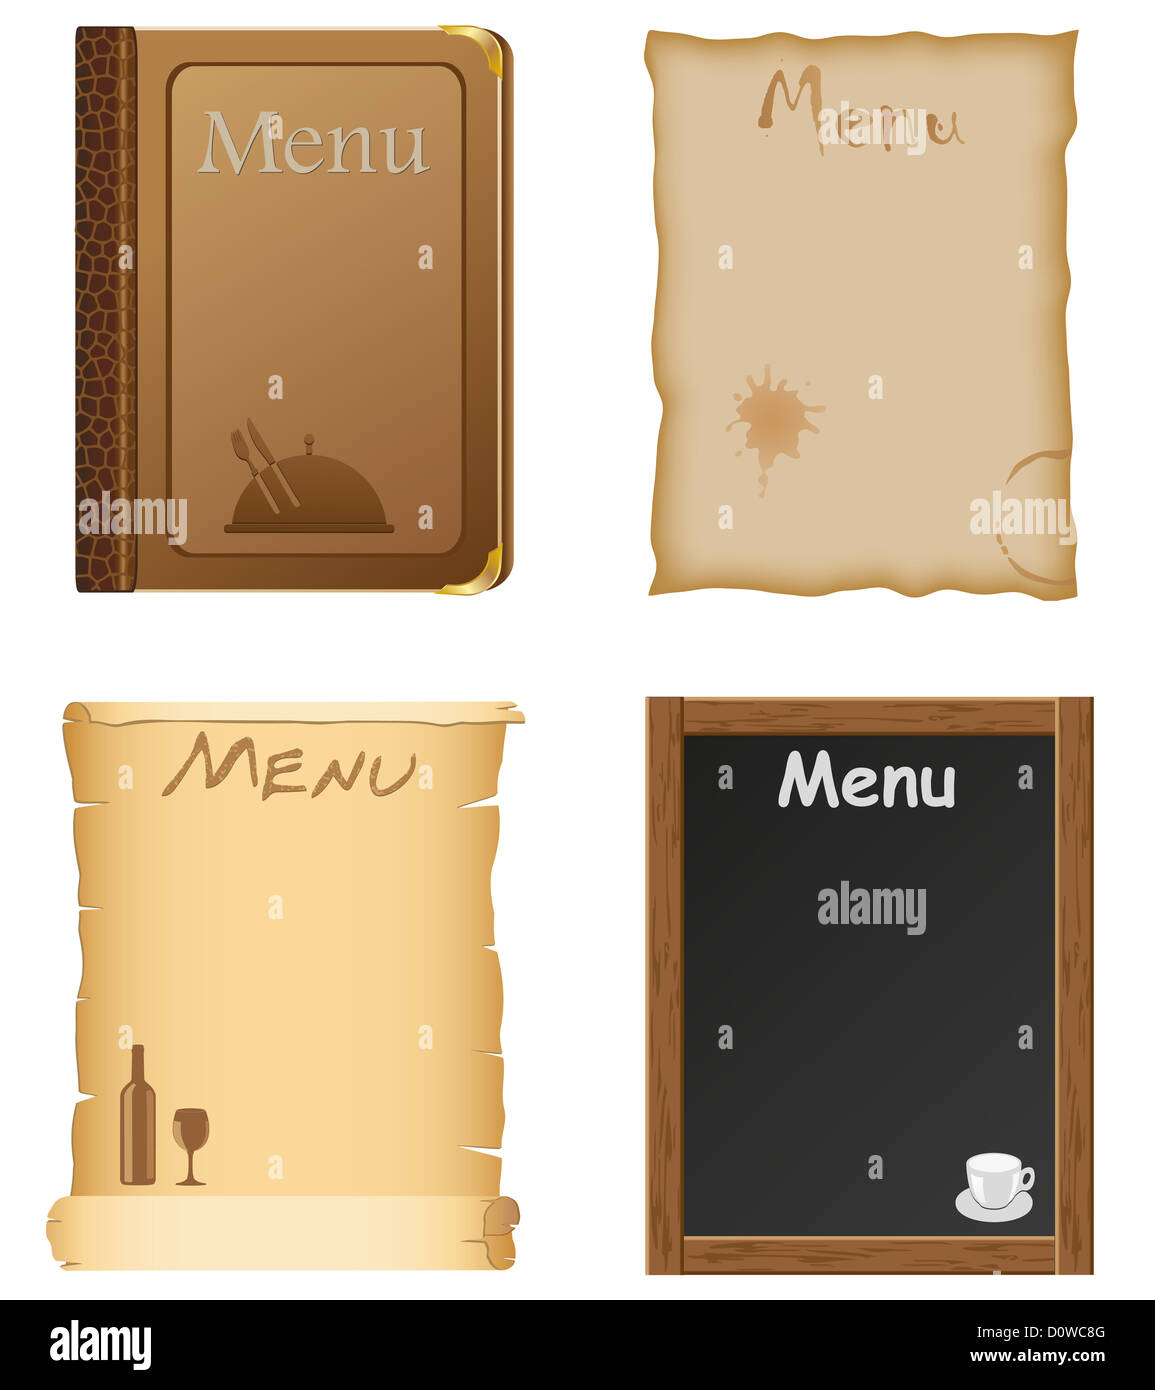 Thiết kế Menu nhà hàng: Thiết kế menu là điều rất quan trọng để tạo ấn tượng với khách hàng đến ăn uống tại nhà hàng. Chúng tôi tự hào giới thiệu thiết kế menu chuyên nghiệp và đẹp mắt để làm hài lòng khách hàng khó tính nhất. Hãy xem qua thiết kế của chúng tôi để có cái nhìn tổng quan về dịch vụ của chúng tôi nhé! 